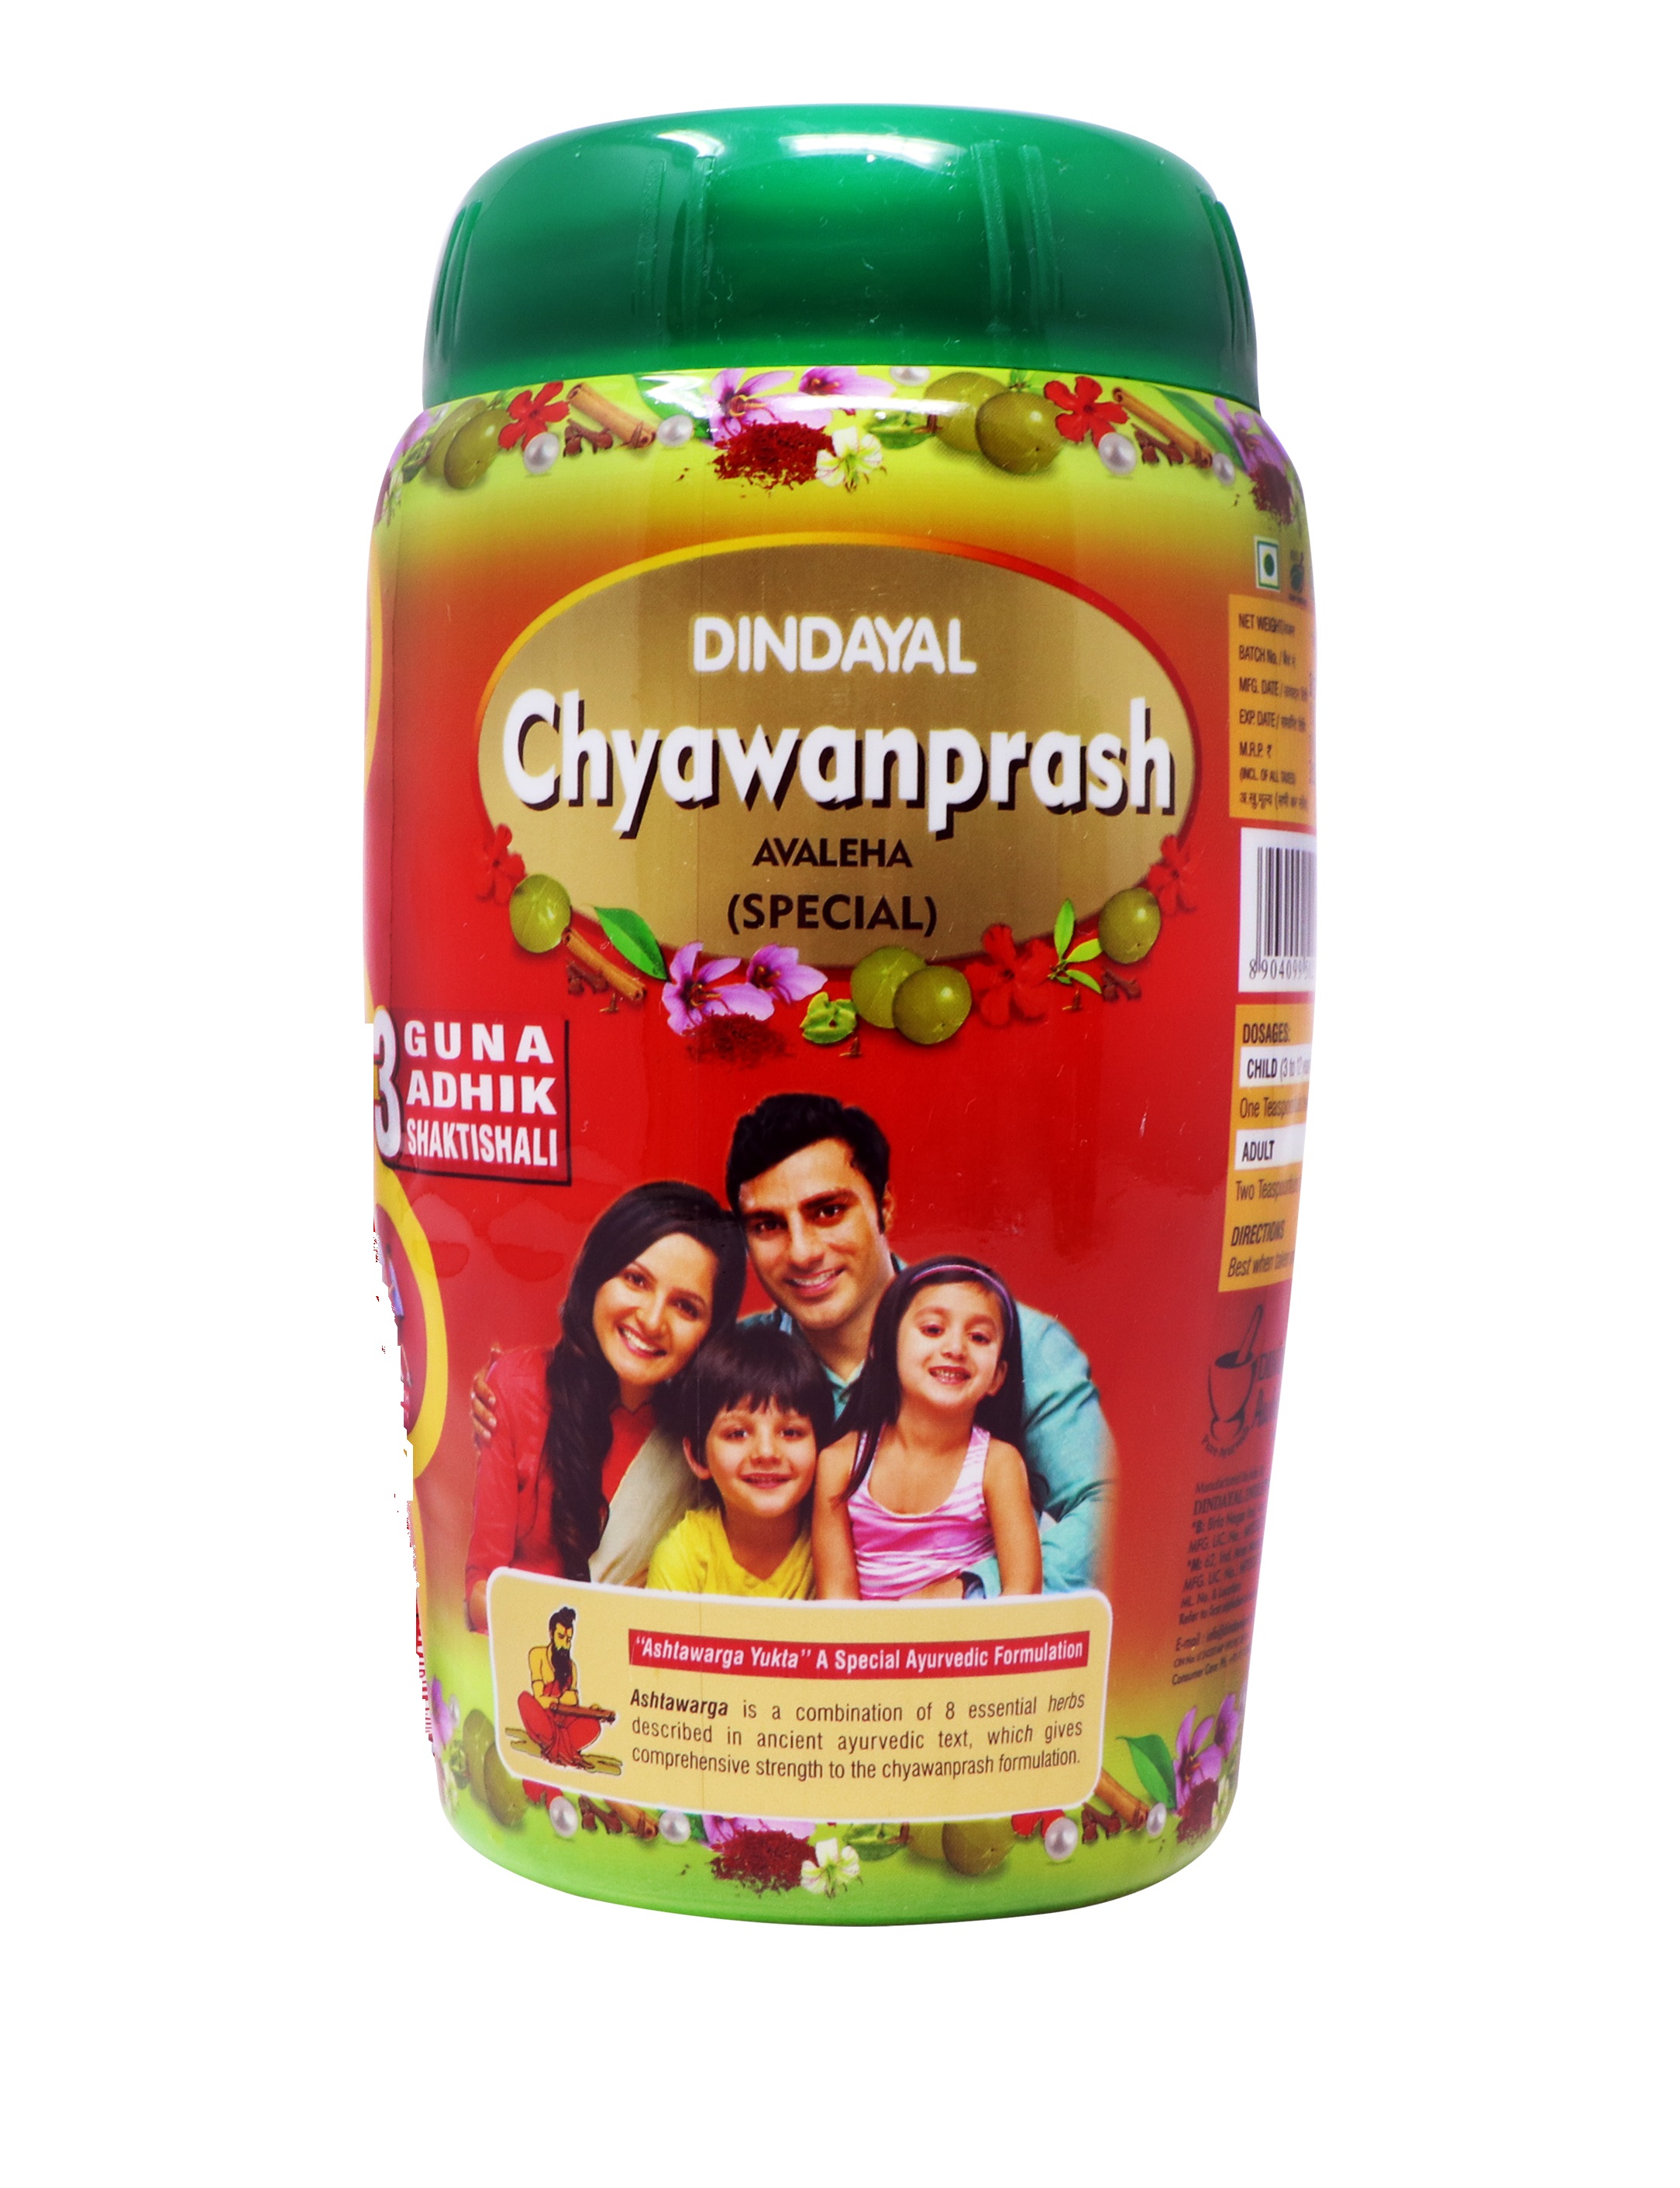 Buy Dindayal Aushadhi Chyawanprash Avaleha (Special) at Best Price Online